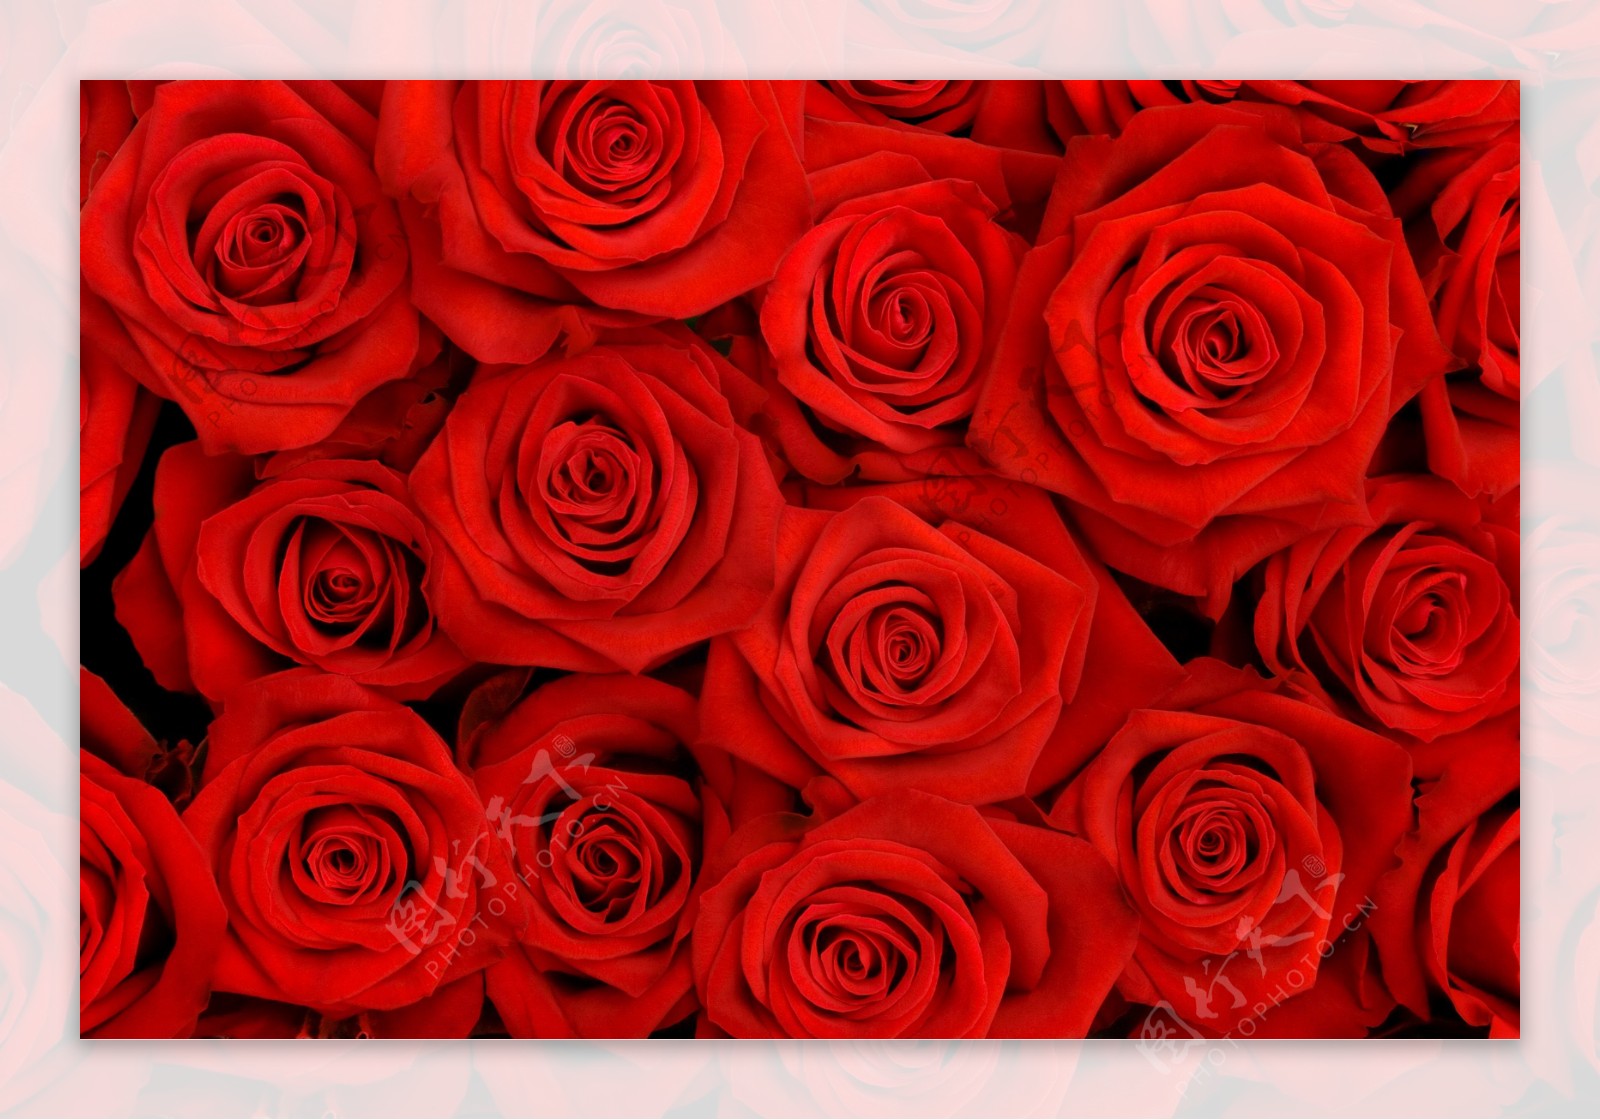 红玫瑰背景高清图片